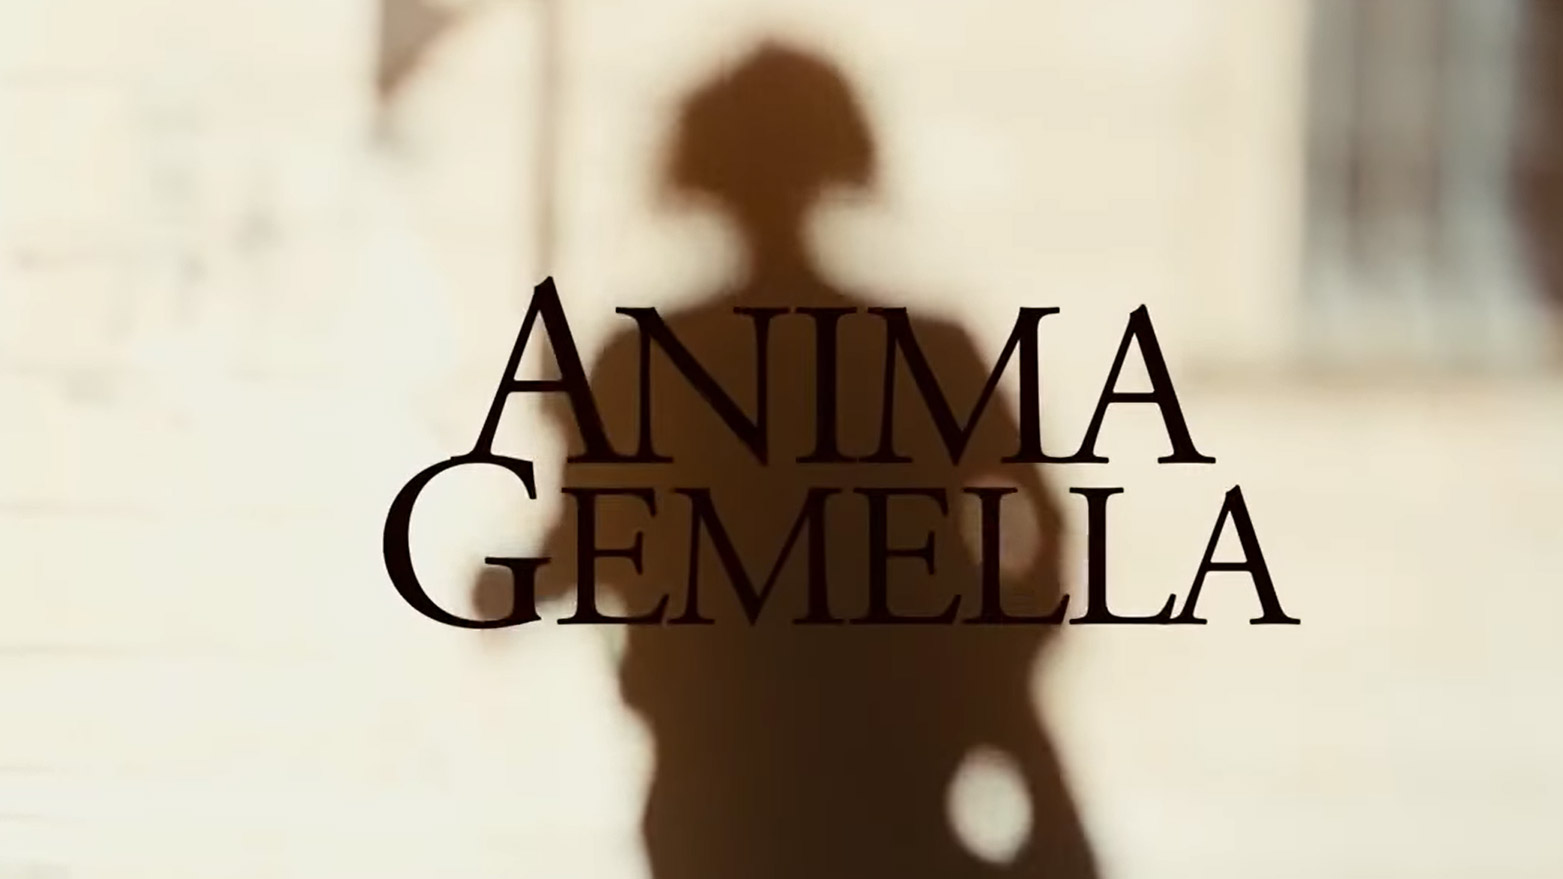 Anima Gemella, serie Canale 5 con Daniele Liotti e Chiara Mastalli